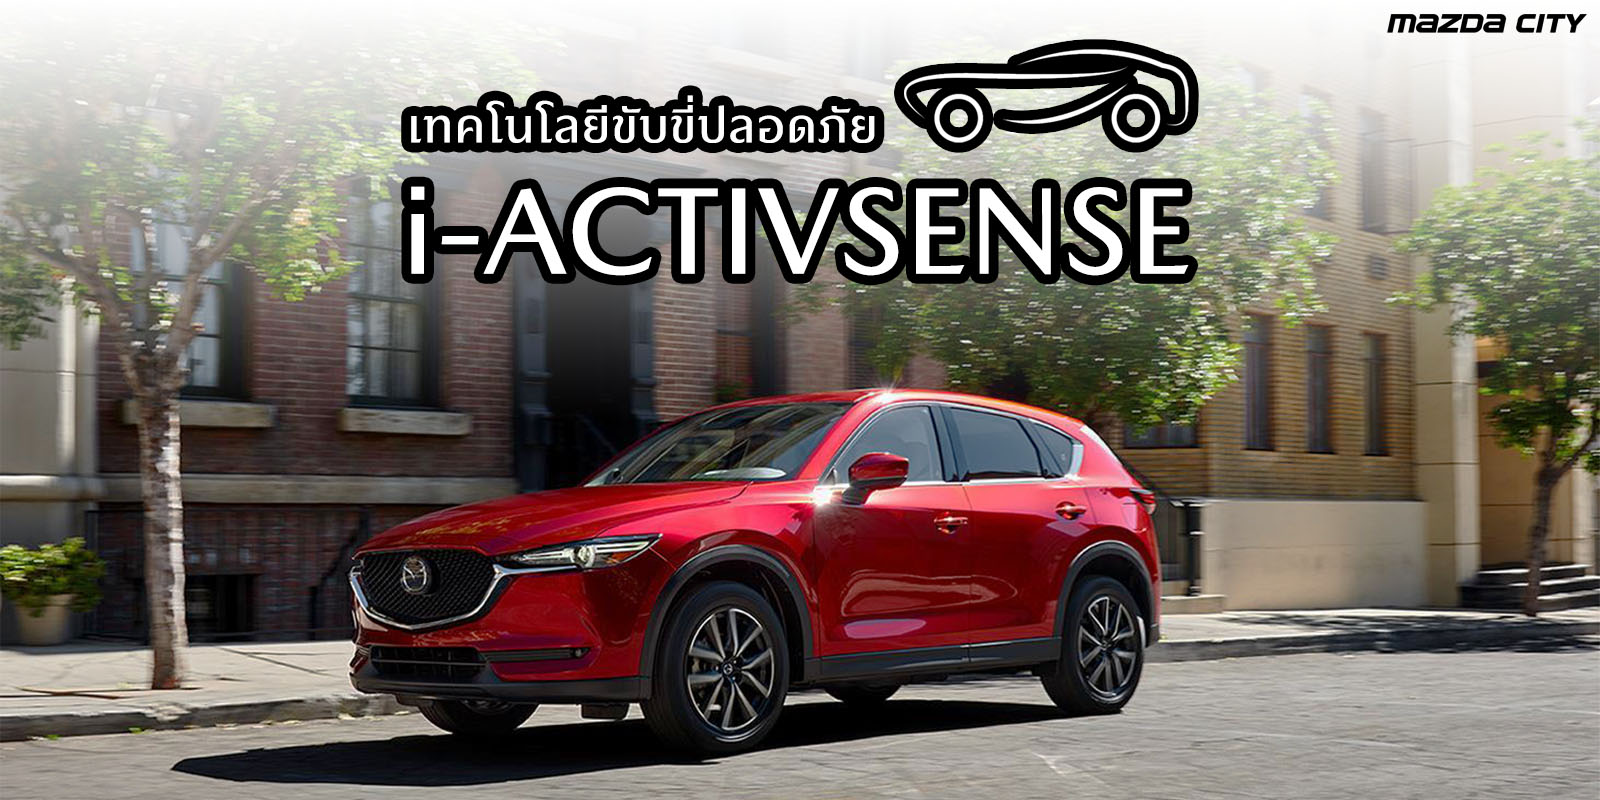 i-ACTIVSENSE_in_Mazda_Mazda City